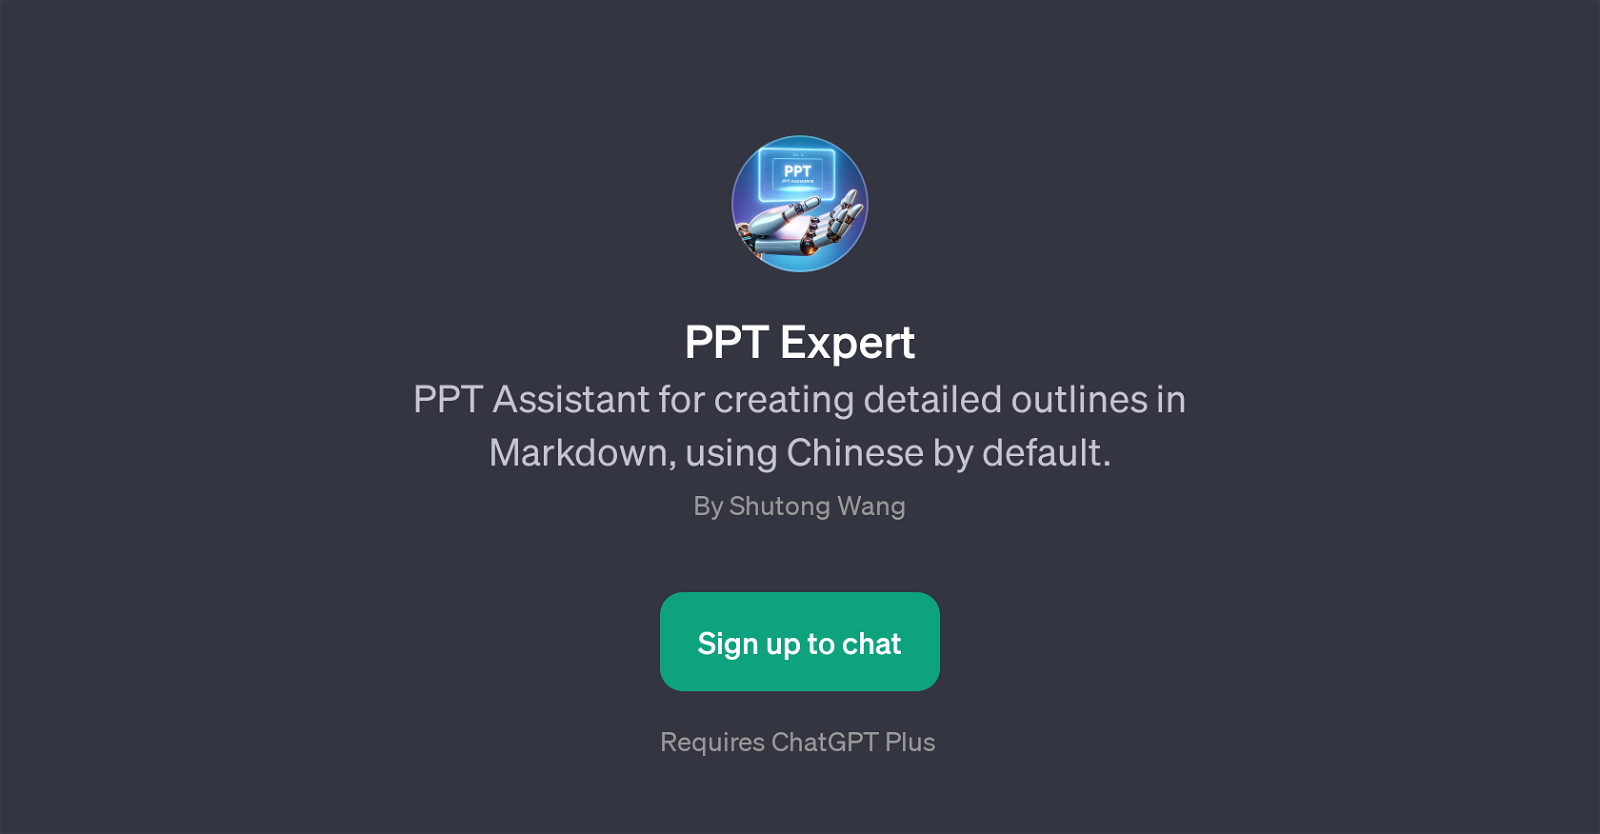 PPT Expert website